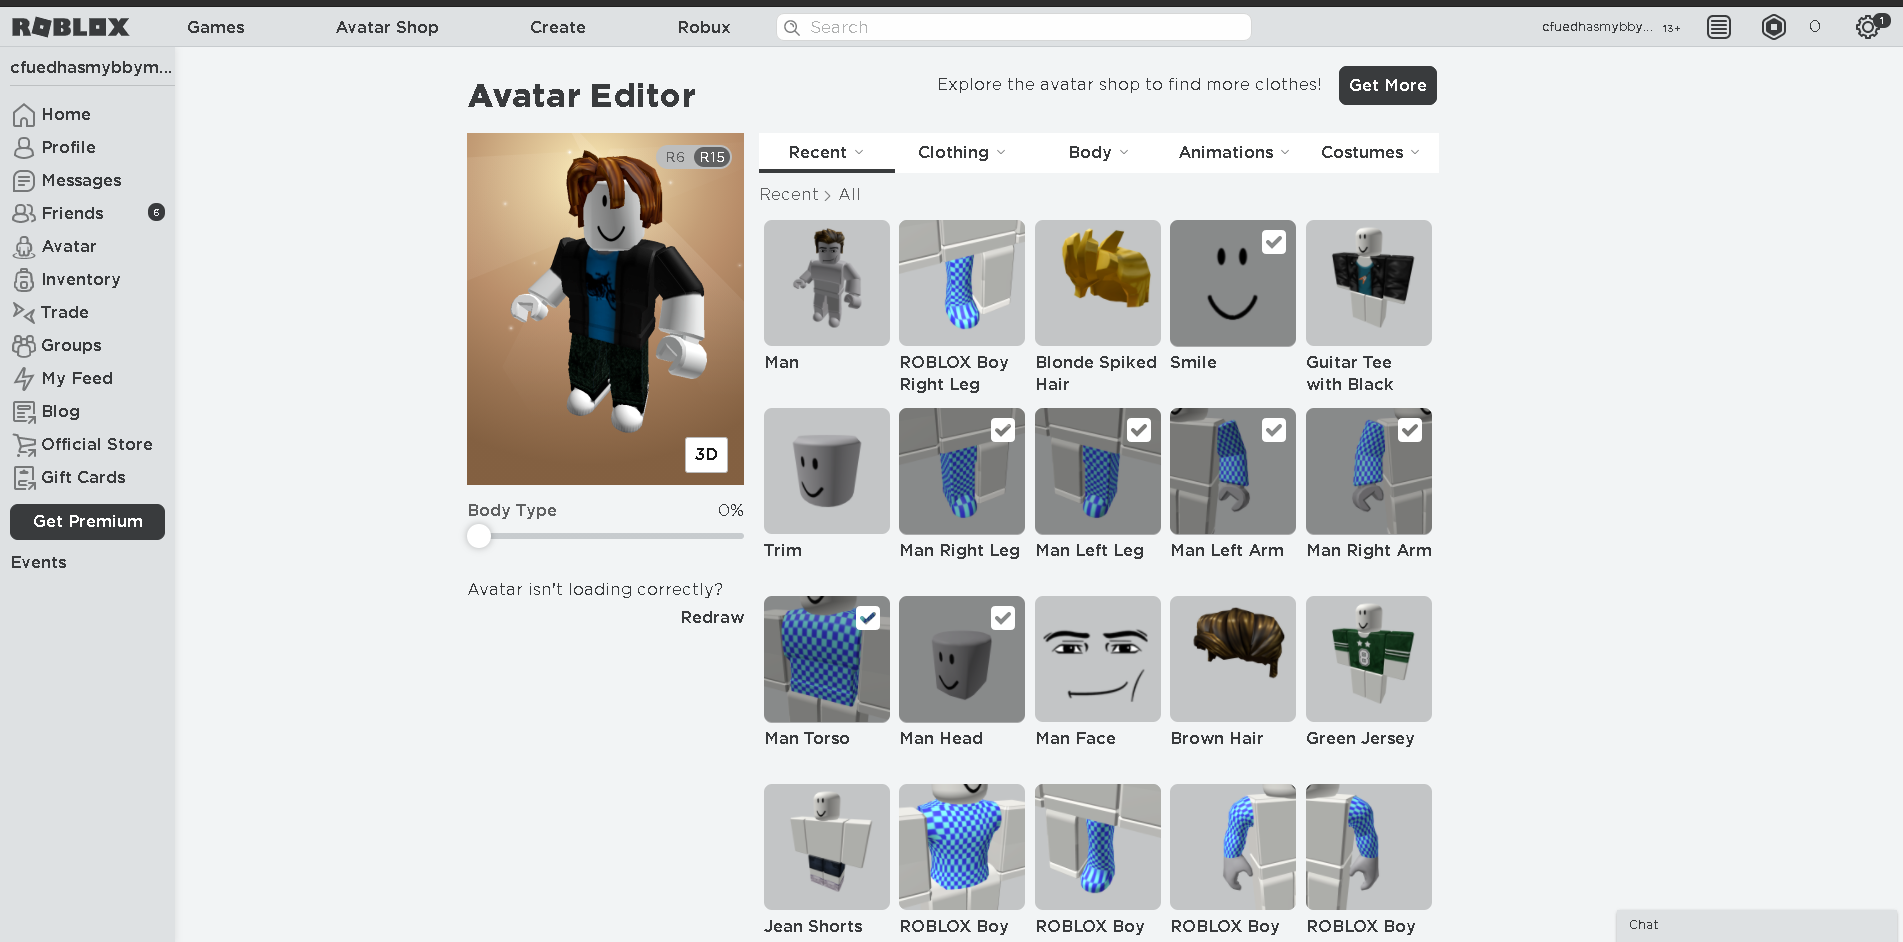 Vào ngày 12 tháng 12 năm 2020, trang Avatar Roblox đã ra mắt với tin vui cho người dùng: tải xuống miễn phí và vay mượn các mặt hàng tuyệt vời để tùy chỉnh nhân vật của bạn. Đừng bỏ lỡ cơ hội để làm cho avatar của bạn nổi bật và độc đáo hơn.